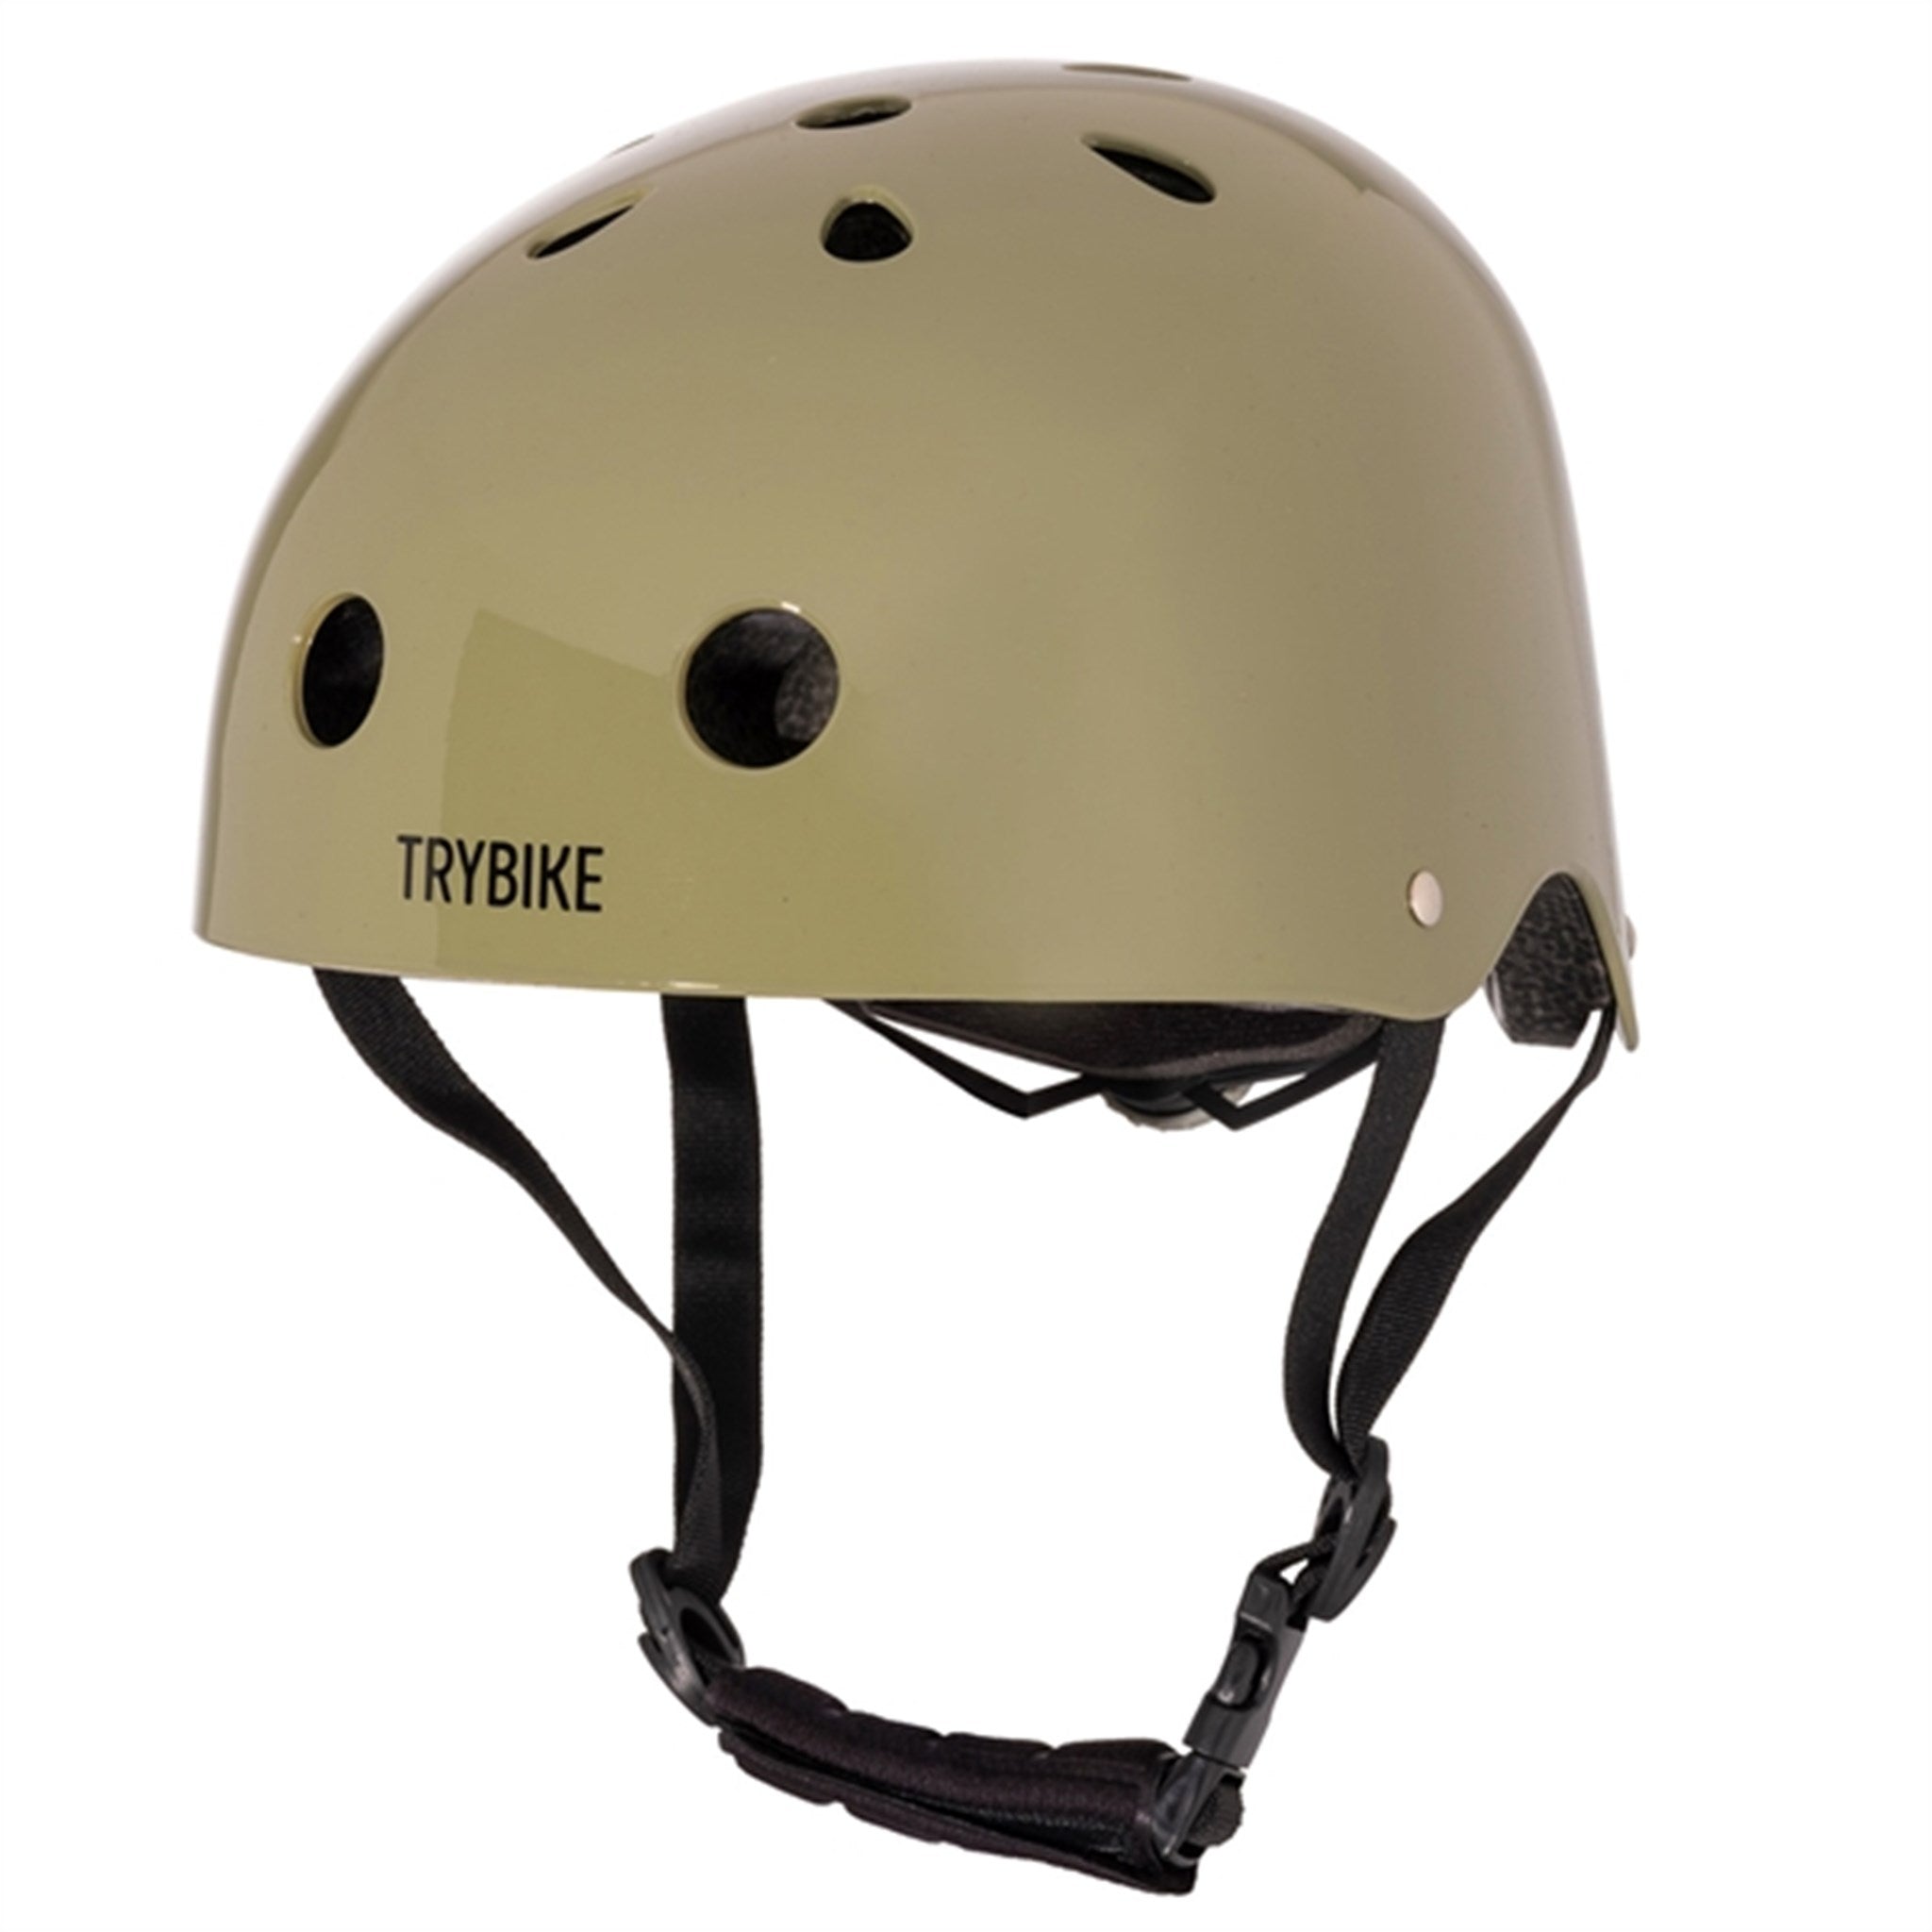 Trybike CoConut Misty Green Helmet Retro Look